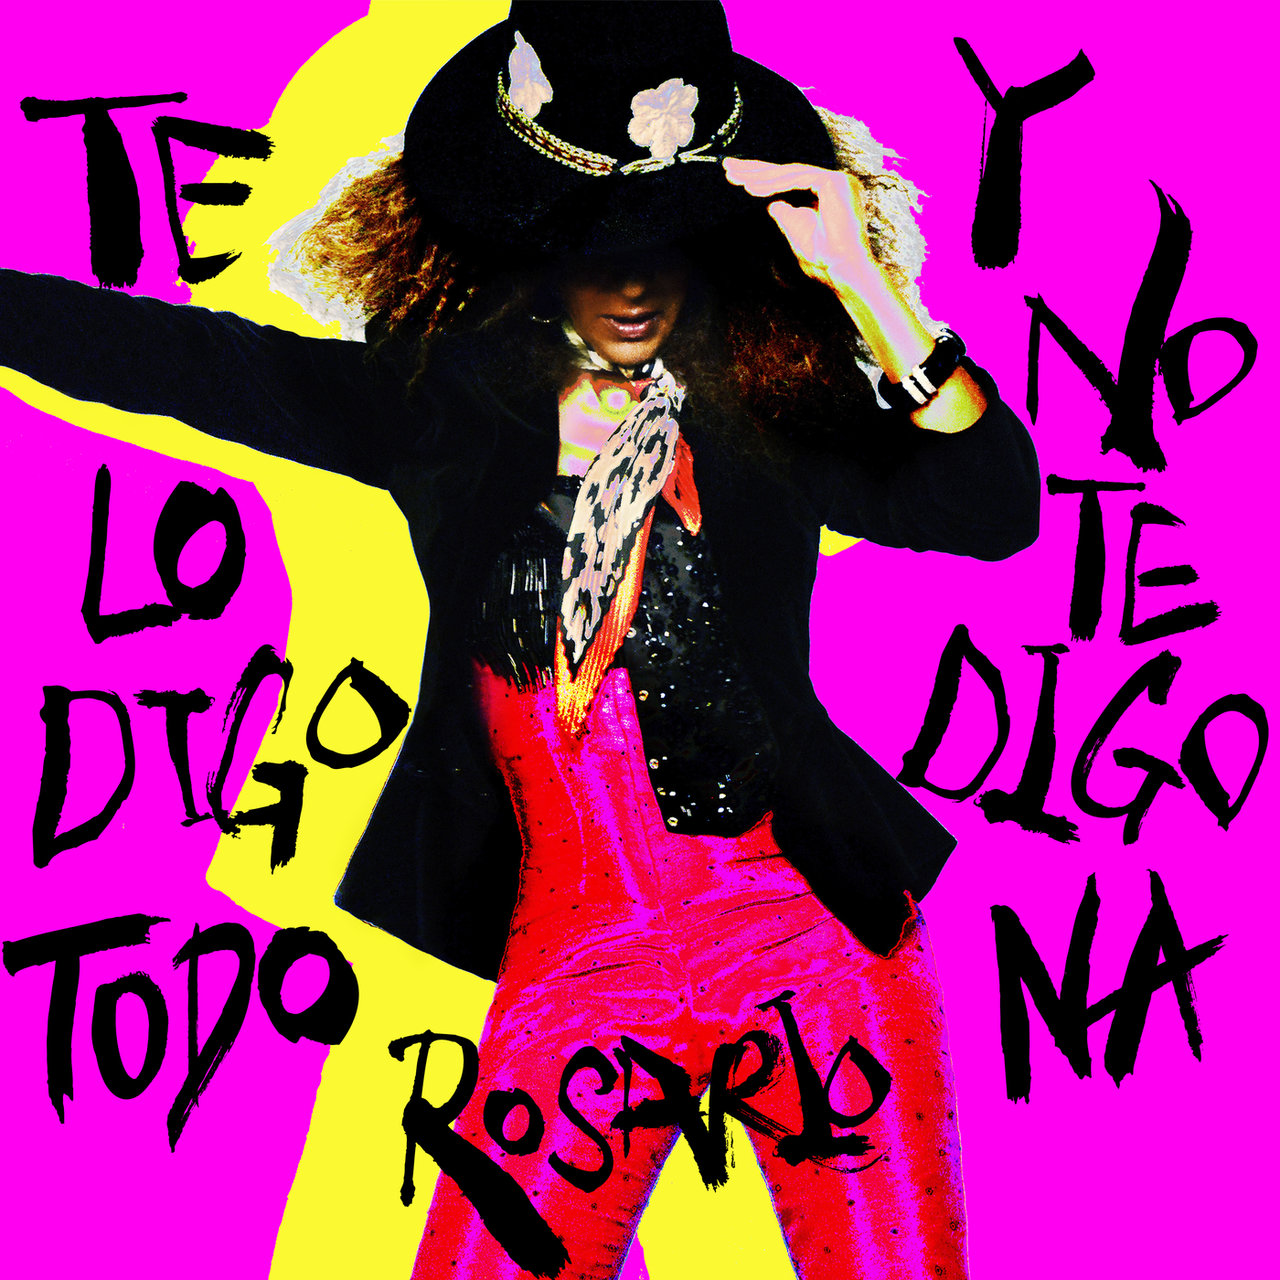 Rosario Te Lo Digo Todo Y No Te Digo Na cover artwork